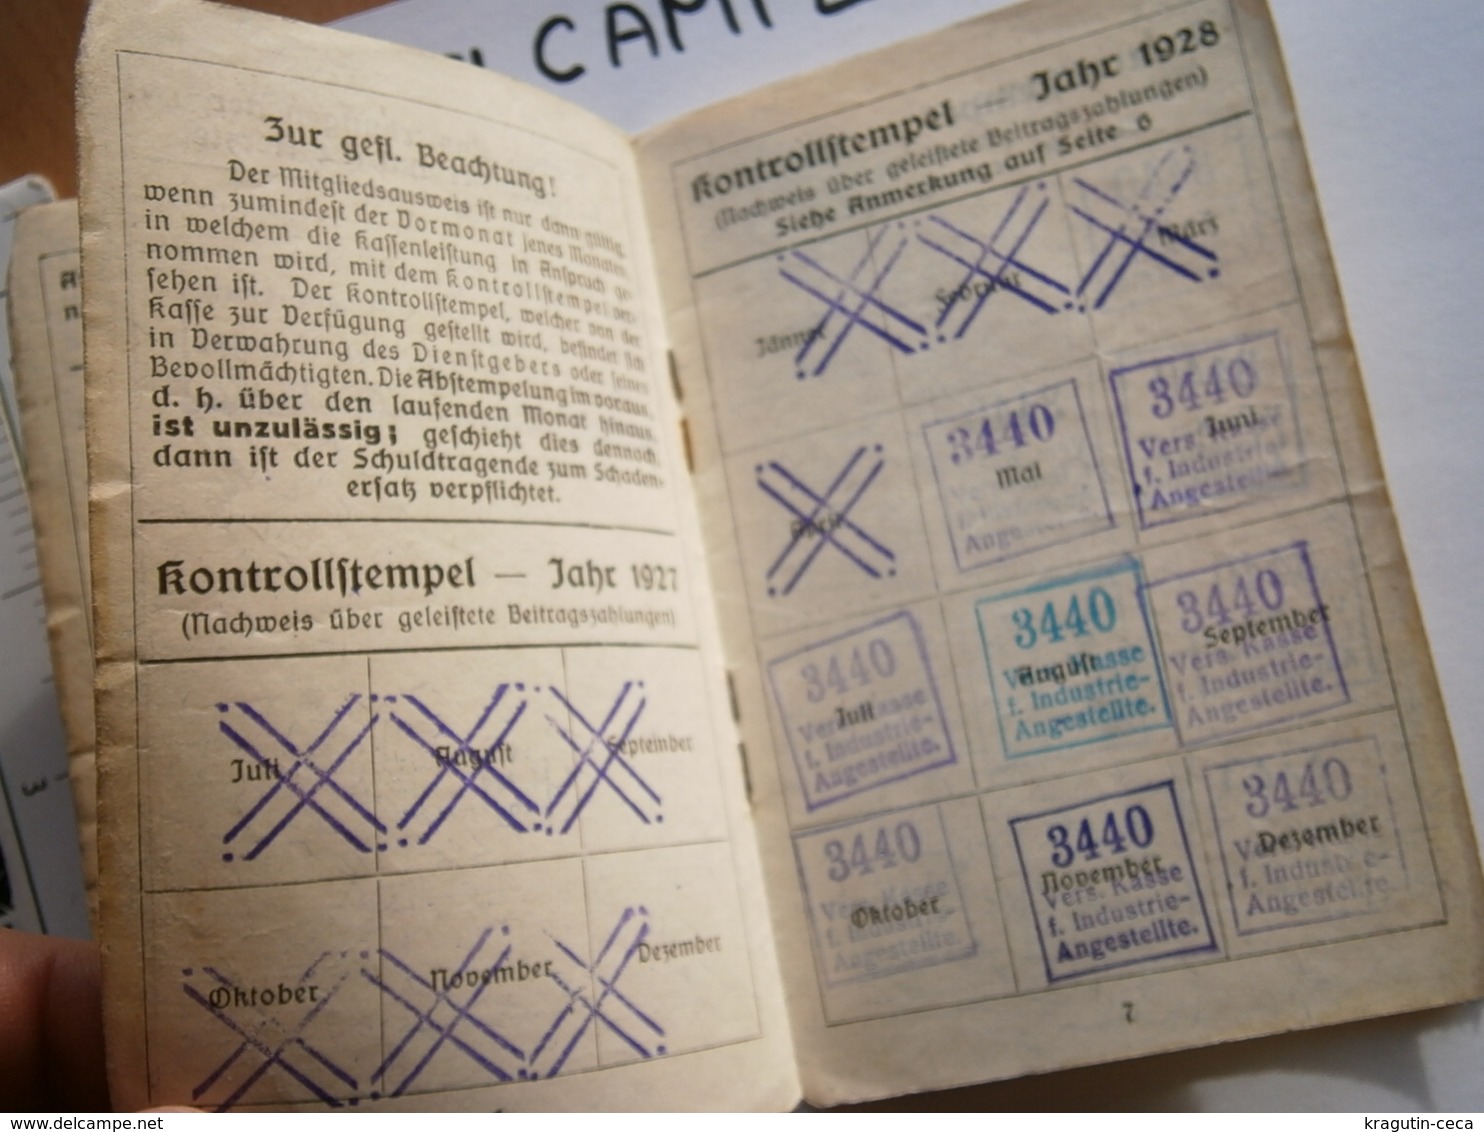 1930 WIEN OSTERREICH VIENNA AUSTRIA Mitgliedsausweis MEMBER CARD AUSWEIS EMPLOYEES DOCUMENT INSURANCE VERSICHERUNGSKARTE - Cartes De Membre